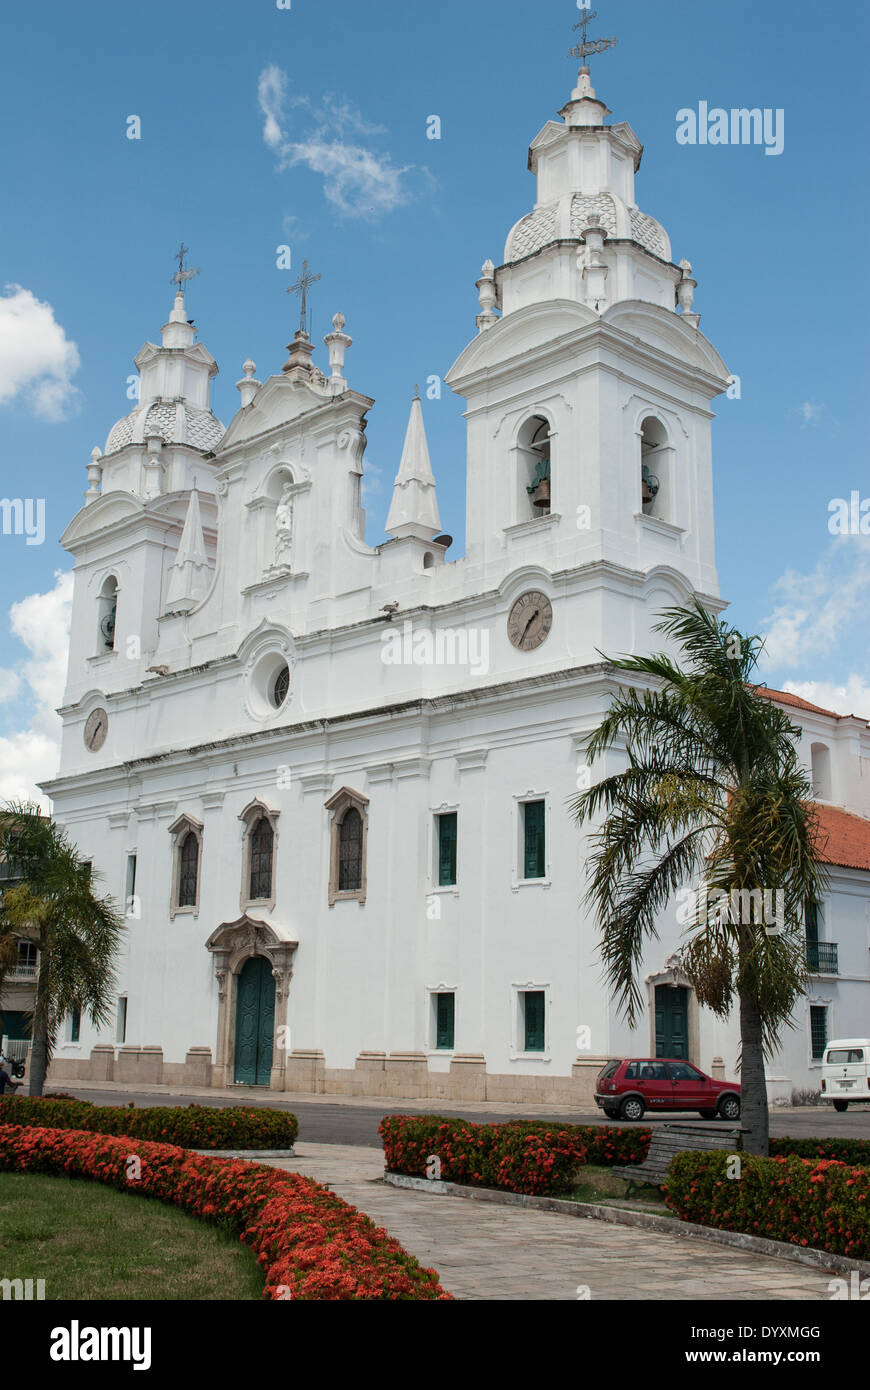 Belem, Bundesstaat Para, Brasilien. Kathedrale. Catedral da Se. Das jährliche Cirio Festival wird hier gefeiert. Stockfoto